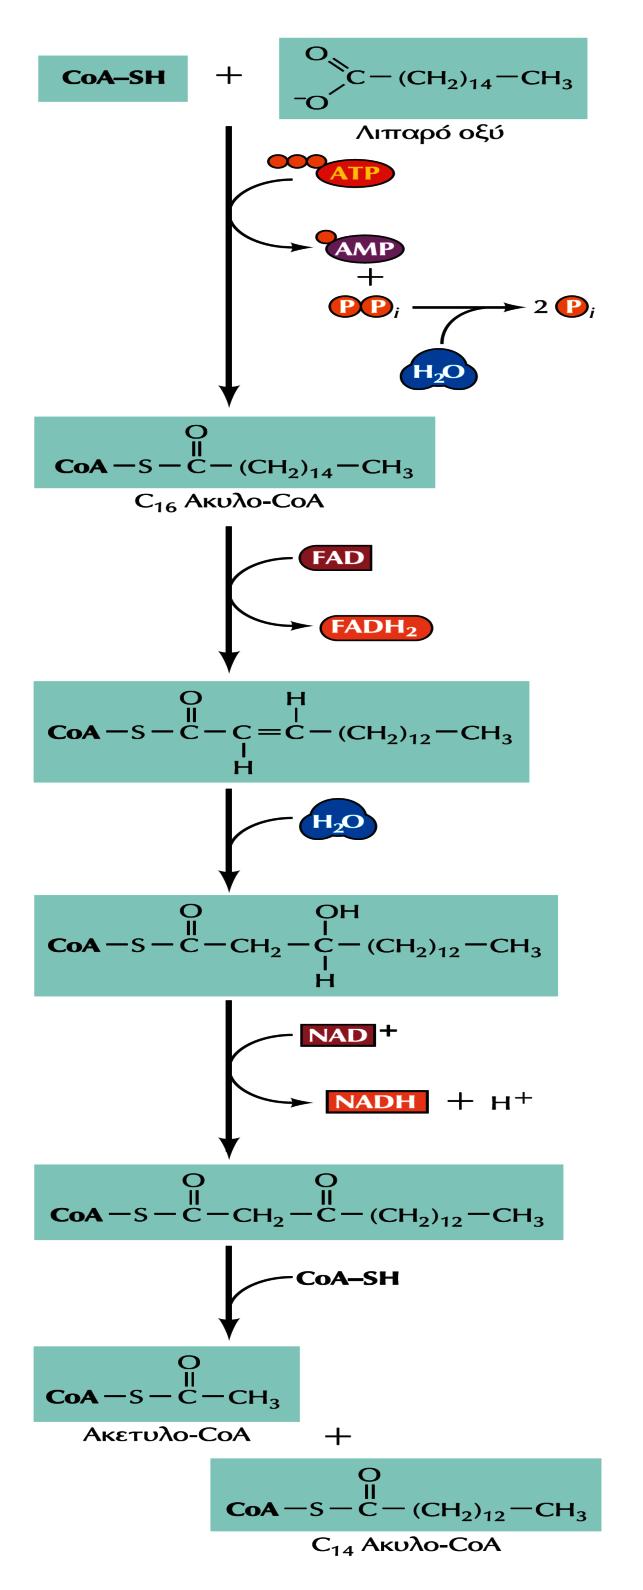 ΤΑ ΕΥΚΑΡΥΩΤΙΚΑ ΚΥΤΤΑΡΑ ΑΠΟΚΤΟΥΝ ΑΤΡ με 2 ΜΗΧΑΝΙΣΜΟΥΣ -II A. Χωρίς μεμβράνες: η οξείδωση των λιπαρών οξέων -Το λιπαρό οξύ (π.χ.